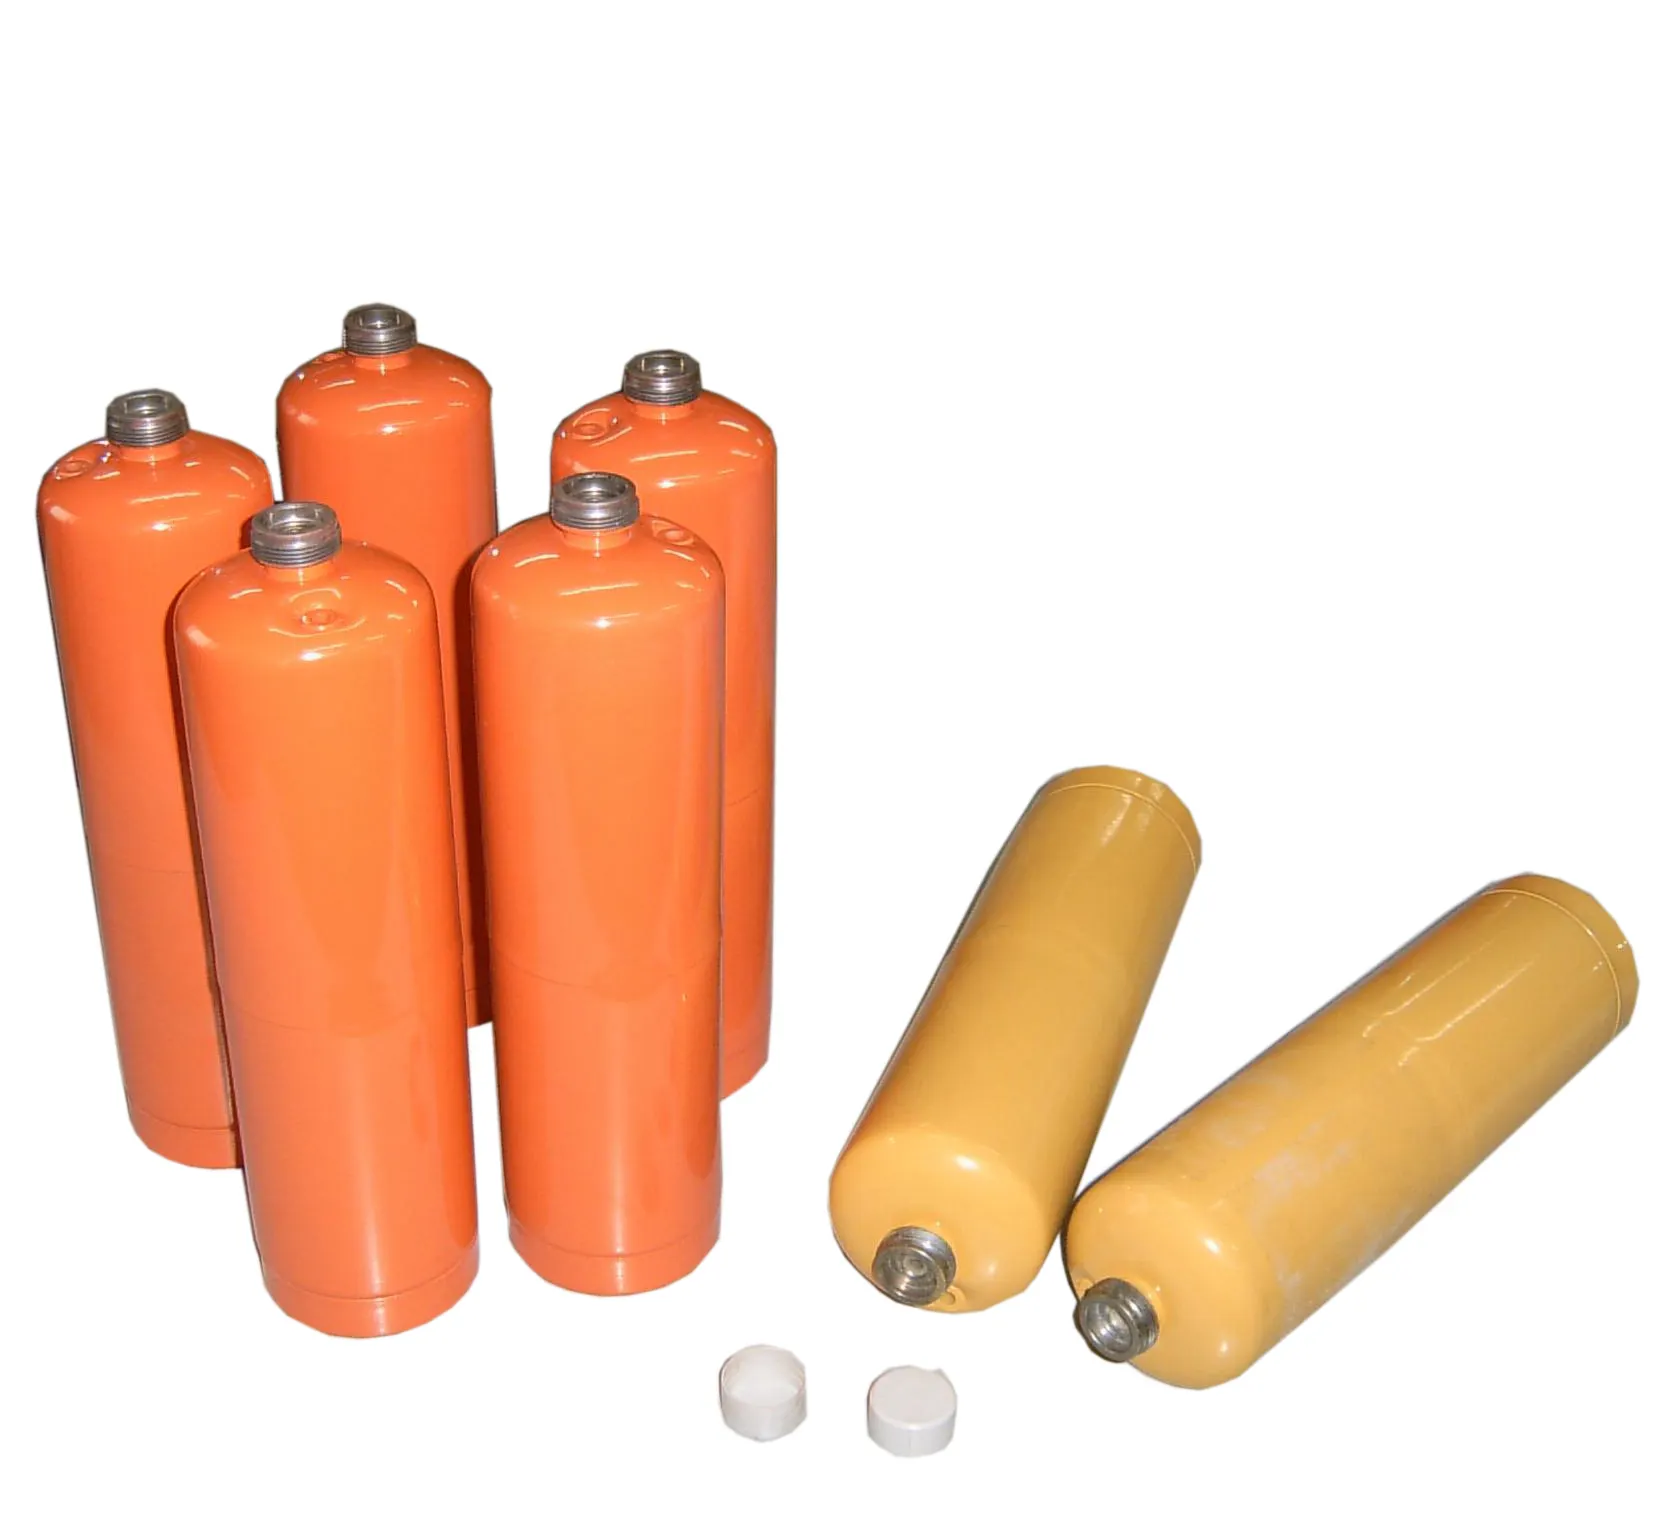 أسطوانات خزان صغيرة 14 أونصة لغاز البروبان r410a مطابقة للمواصفات الأوروبية EN ISO11118